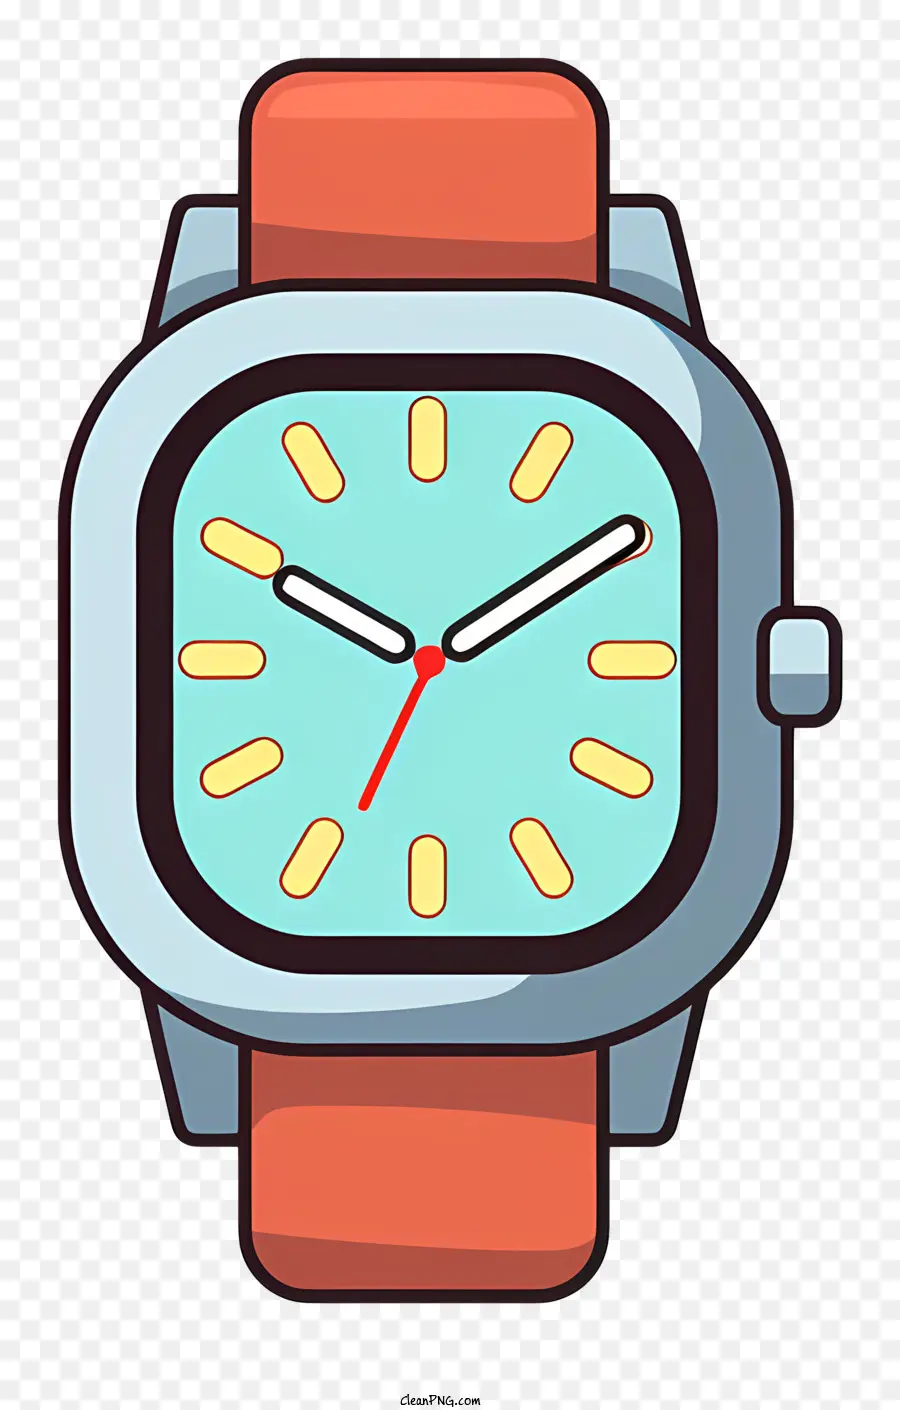 Armbanduhr Plastik Uhr Schwarzes Gesicht Wache weiße Nummer Uhr Red Hour Hand Hand - Plastik -Armbanduhr mit roten und grünen Händen